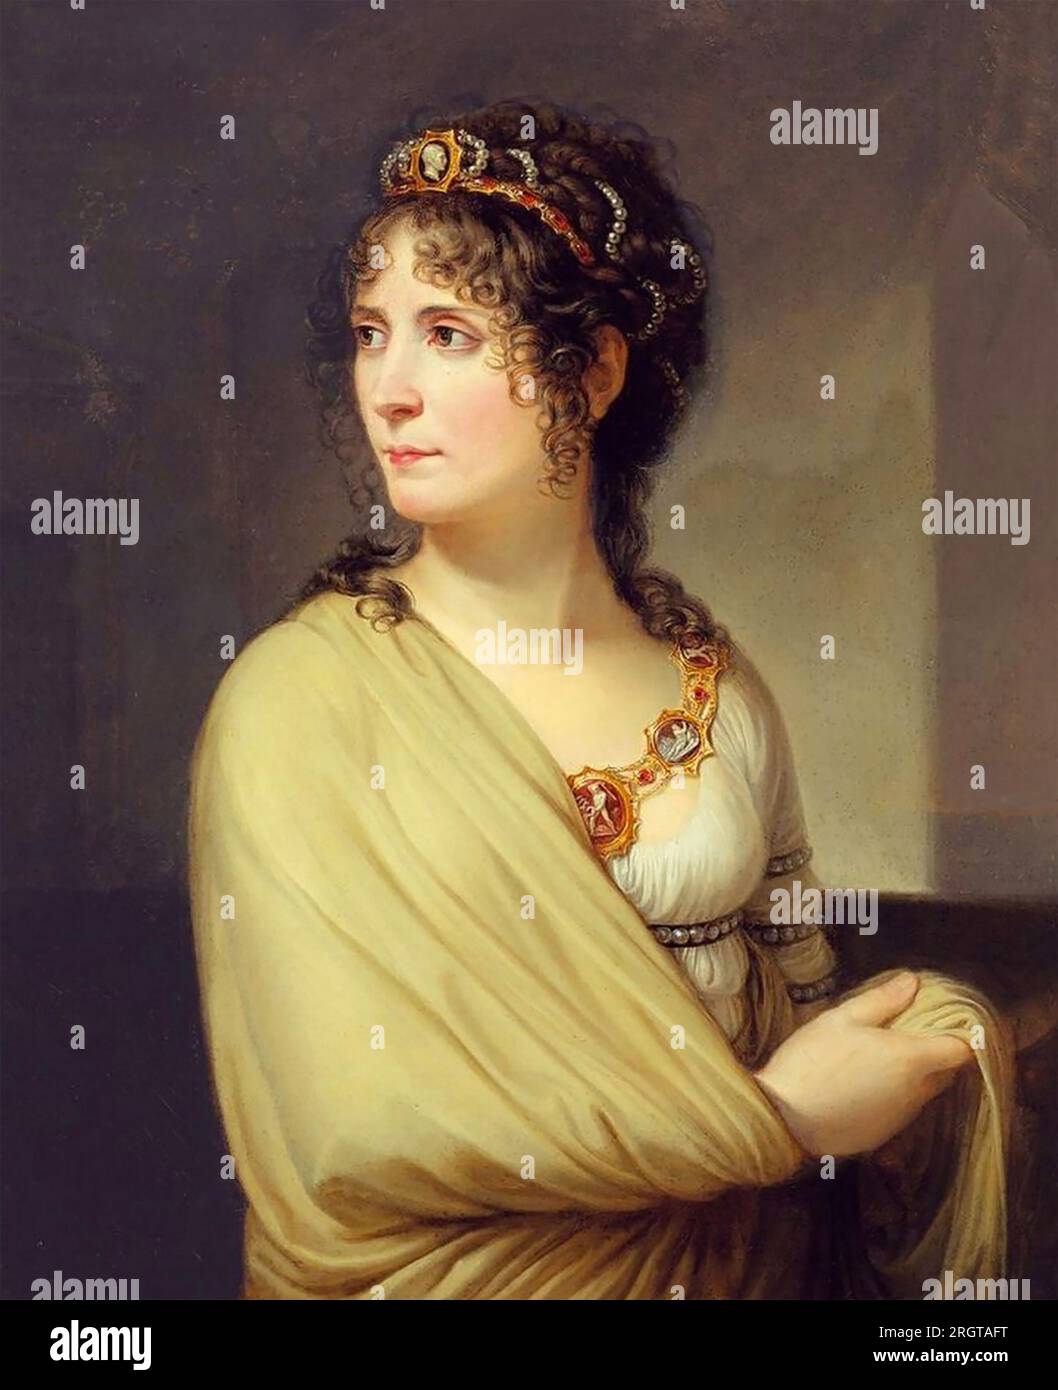 L'IMPERATRICE GIUSEPPINA BONAPARTE (1763-1814) moglie di Napoleone. Dipinto da Andrea Appiani intorno al 1808 Foto Stock